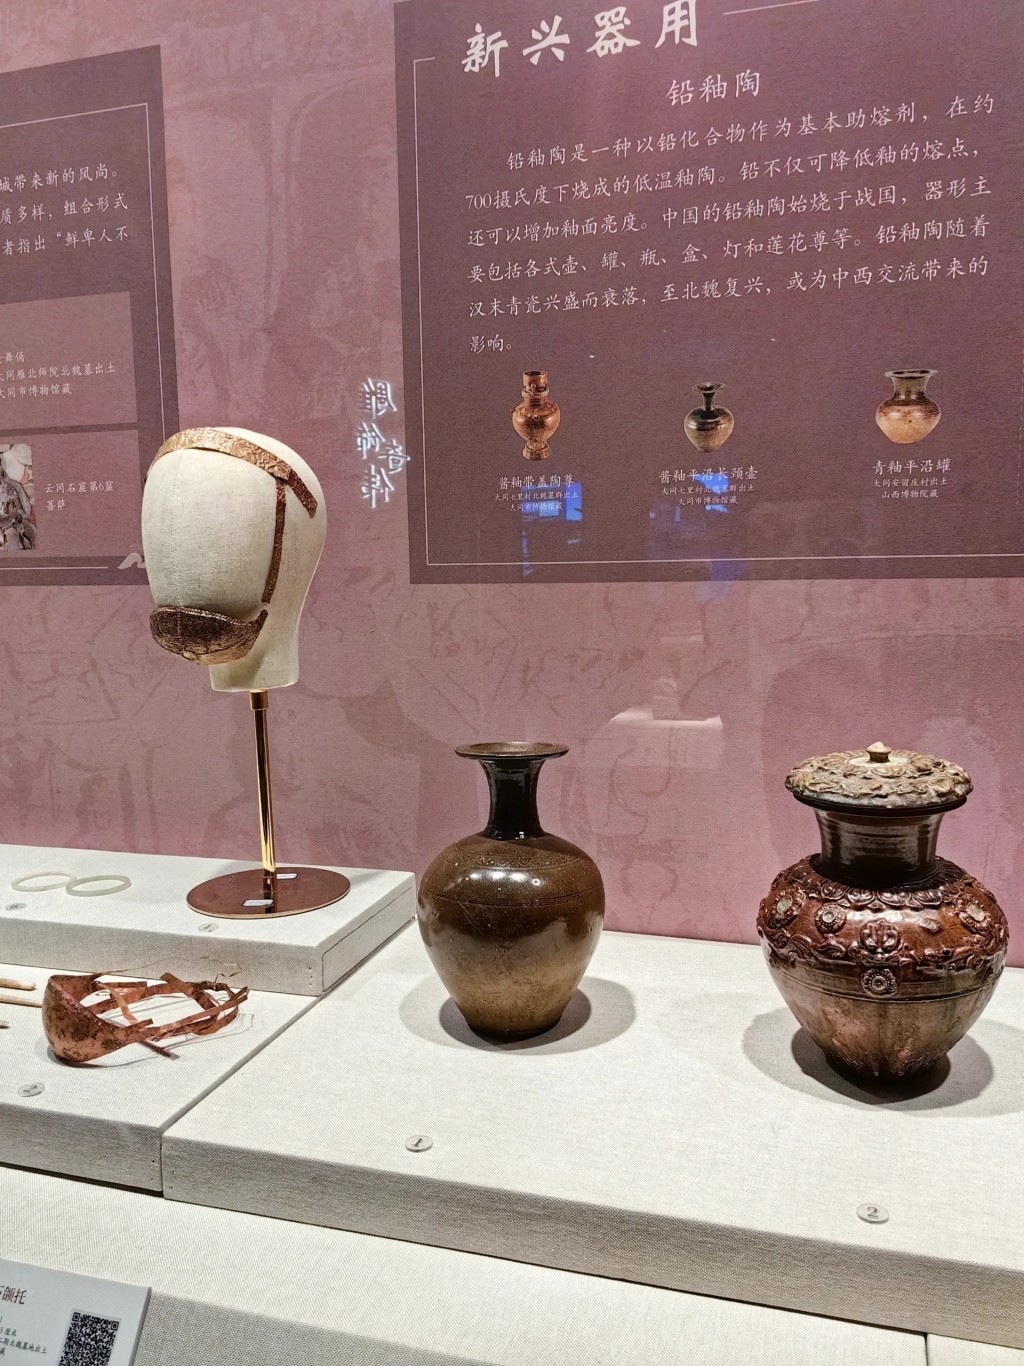 還有超過200件展品及北魏王朝文物珍品（圖片來源：小紅書）